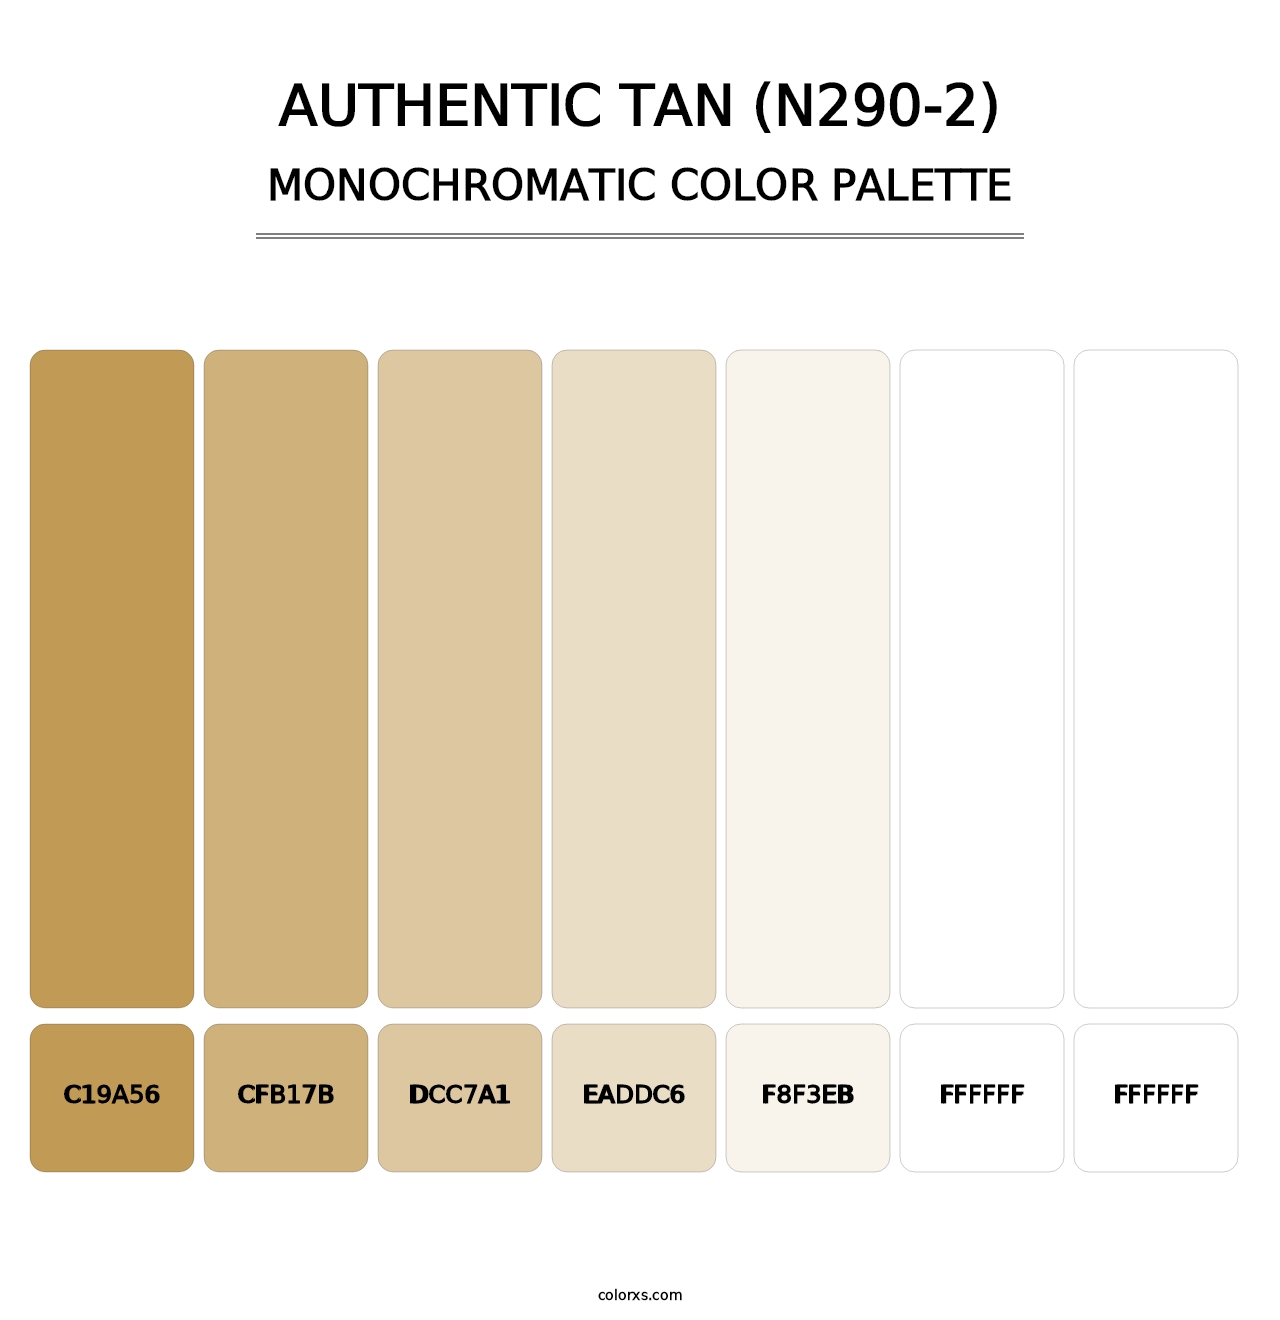 Authentic Tan (N290-2) - Monochromatic Color Palette